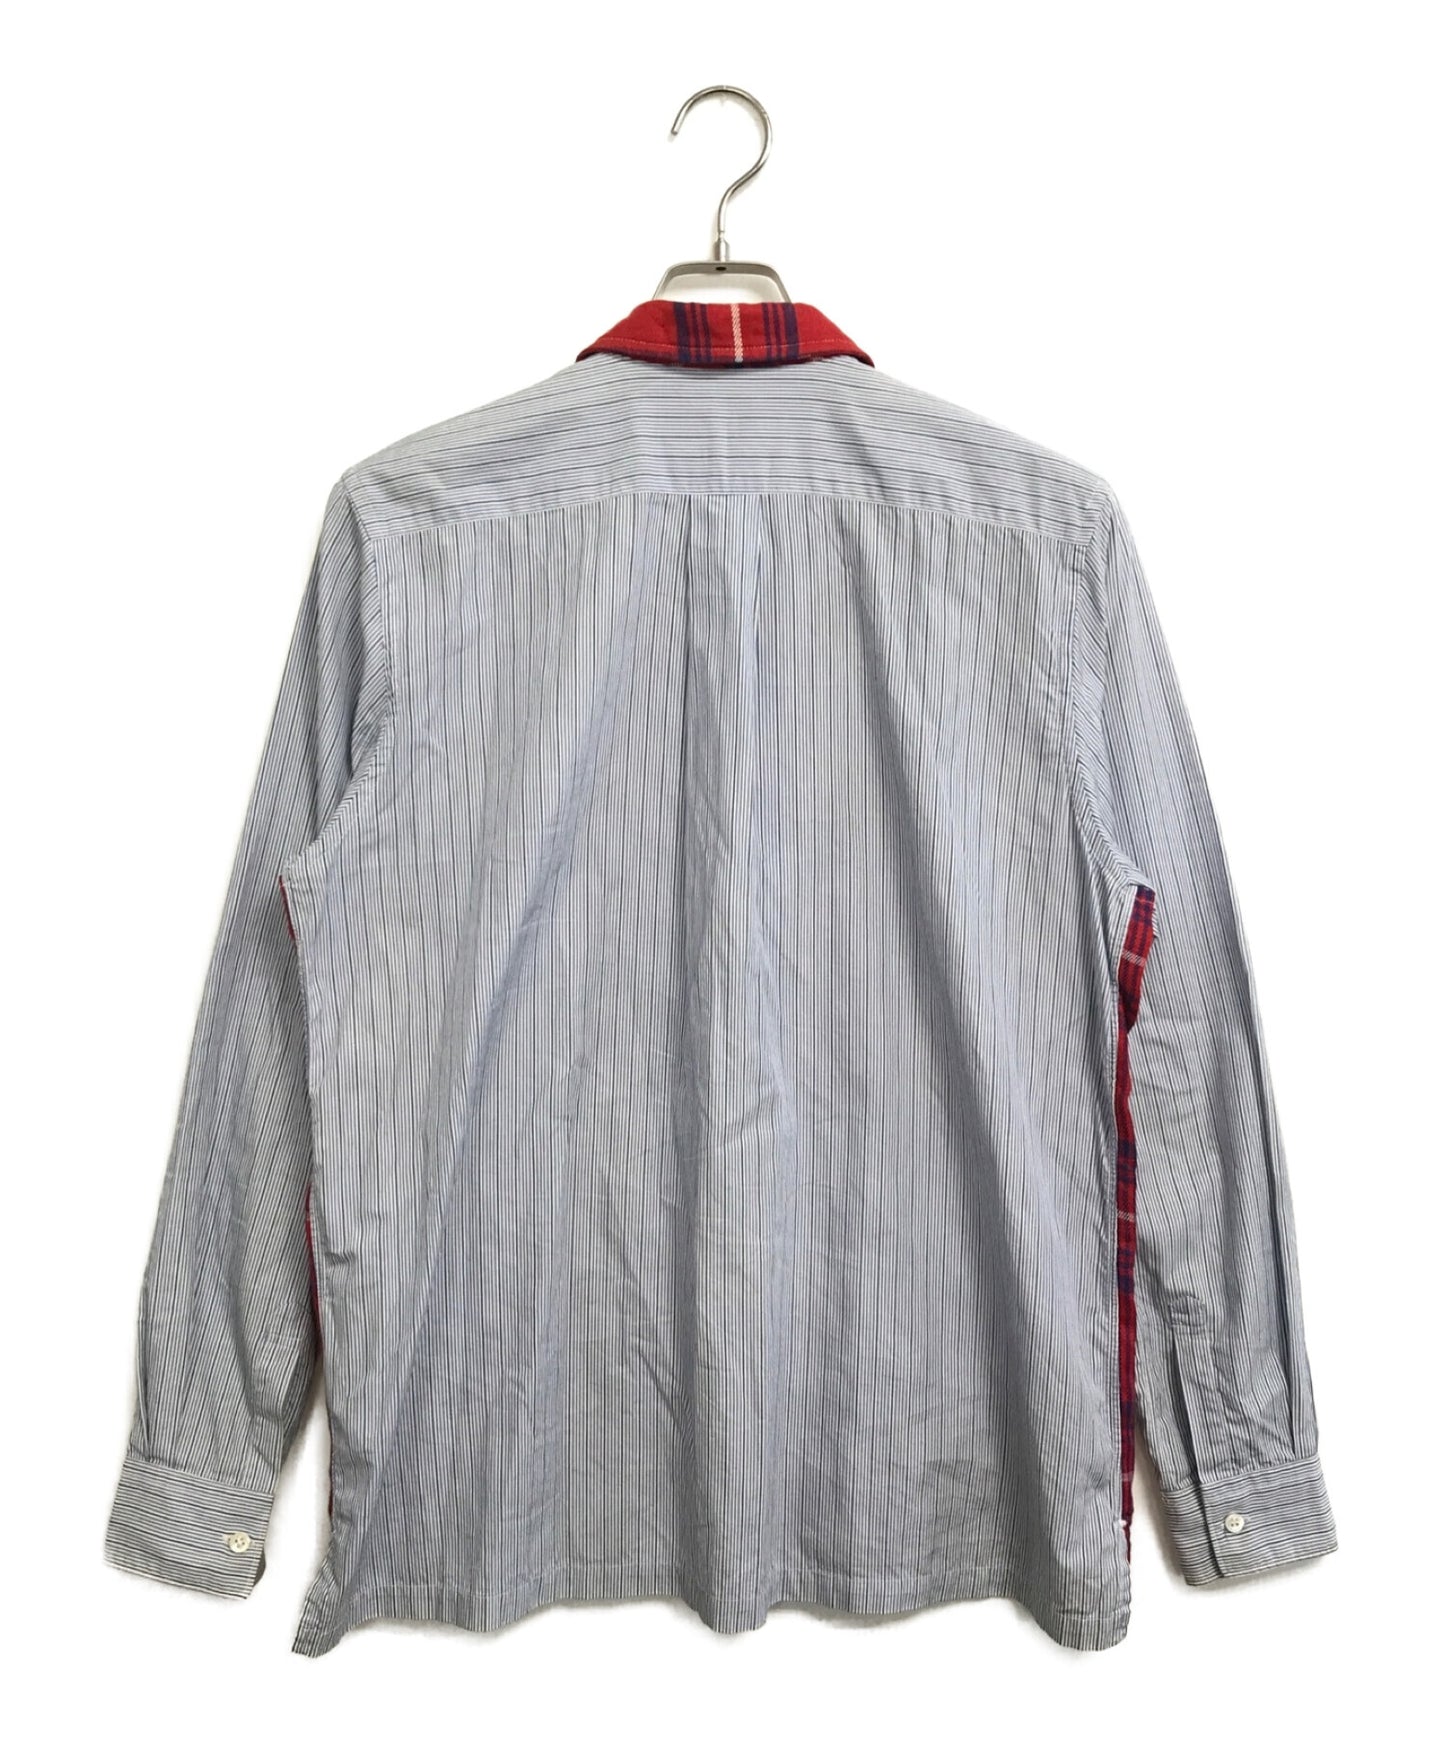 Comme des Garcons襯衫00的前檢查條紋襯衫夾克S10162